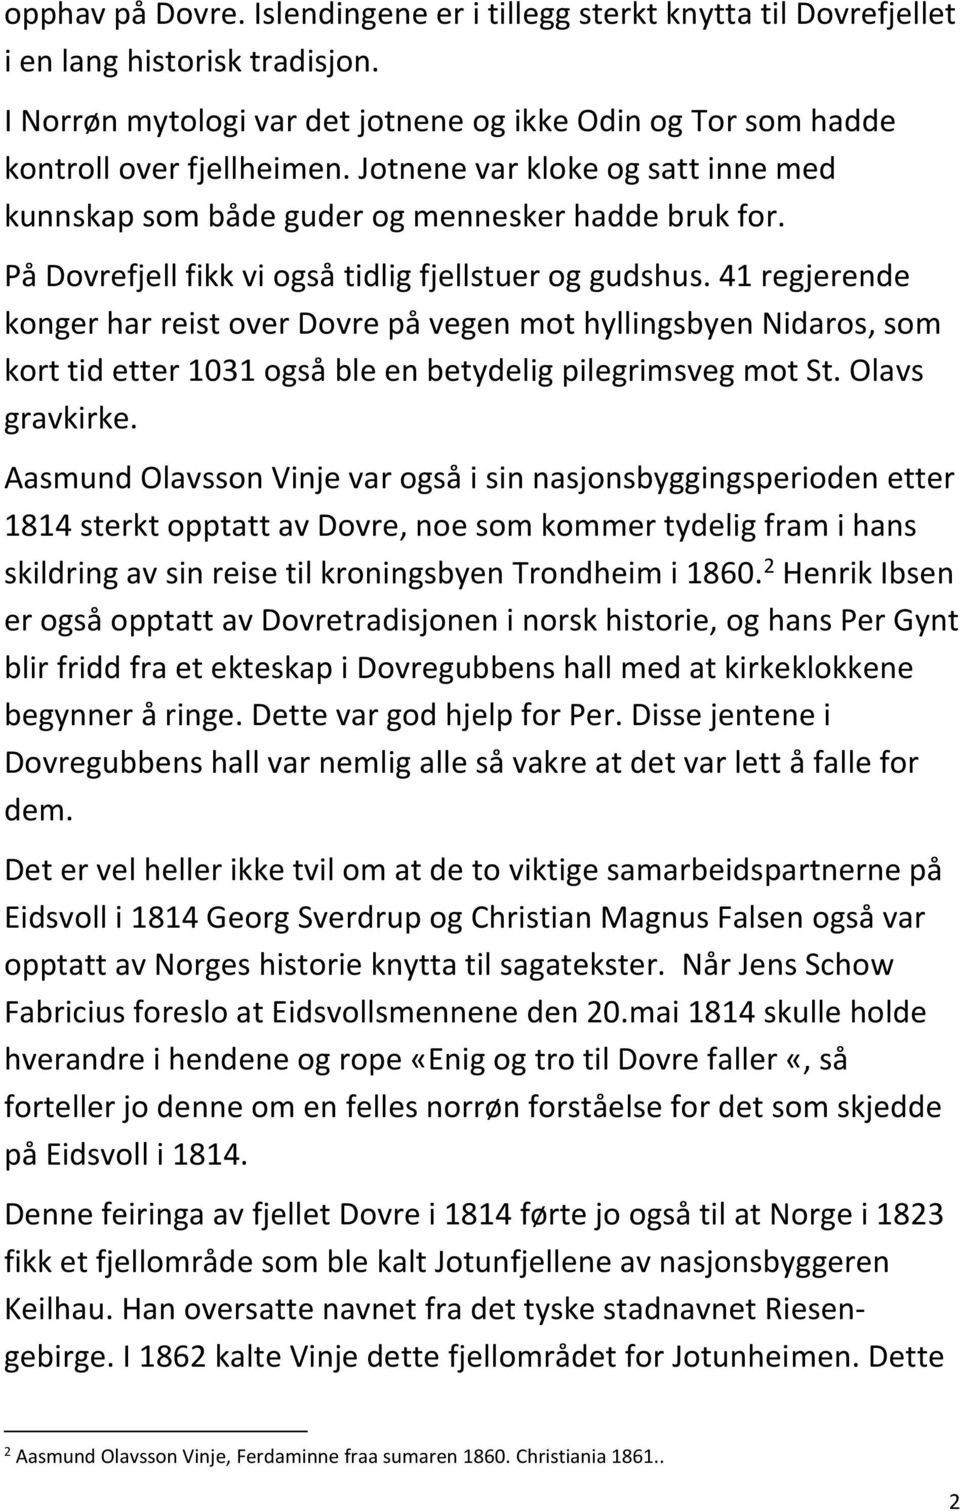 41 regjerende konger har reist over Dovre på vegen mot hyllingsbyen Nidaros, som kort tid etter 1031 også ble en betydelig pilegrimsveg mot St. Olavs gravkirke.